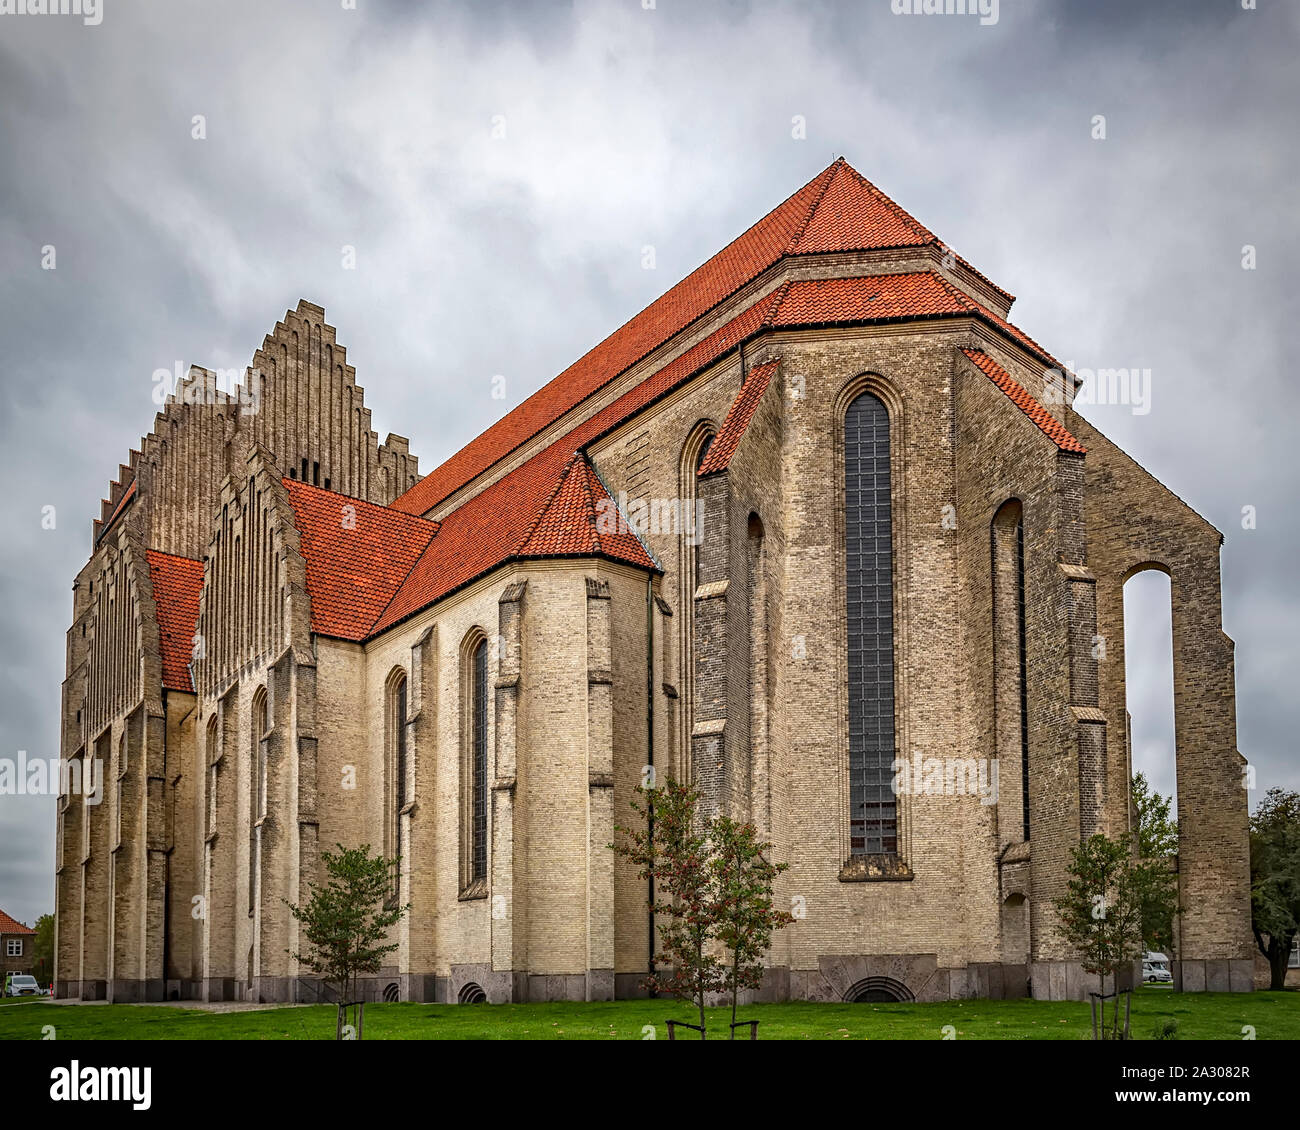 La Iglesia de Grundtvig está situado en el distrito de Bispebjerg de Copenhague, Dinamarca. Es un raro ejemplo de la arquitectura eclesiástica expresionista. Foto de stock